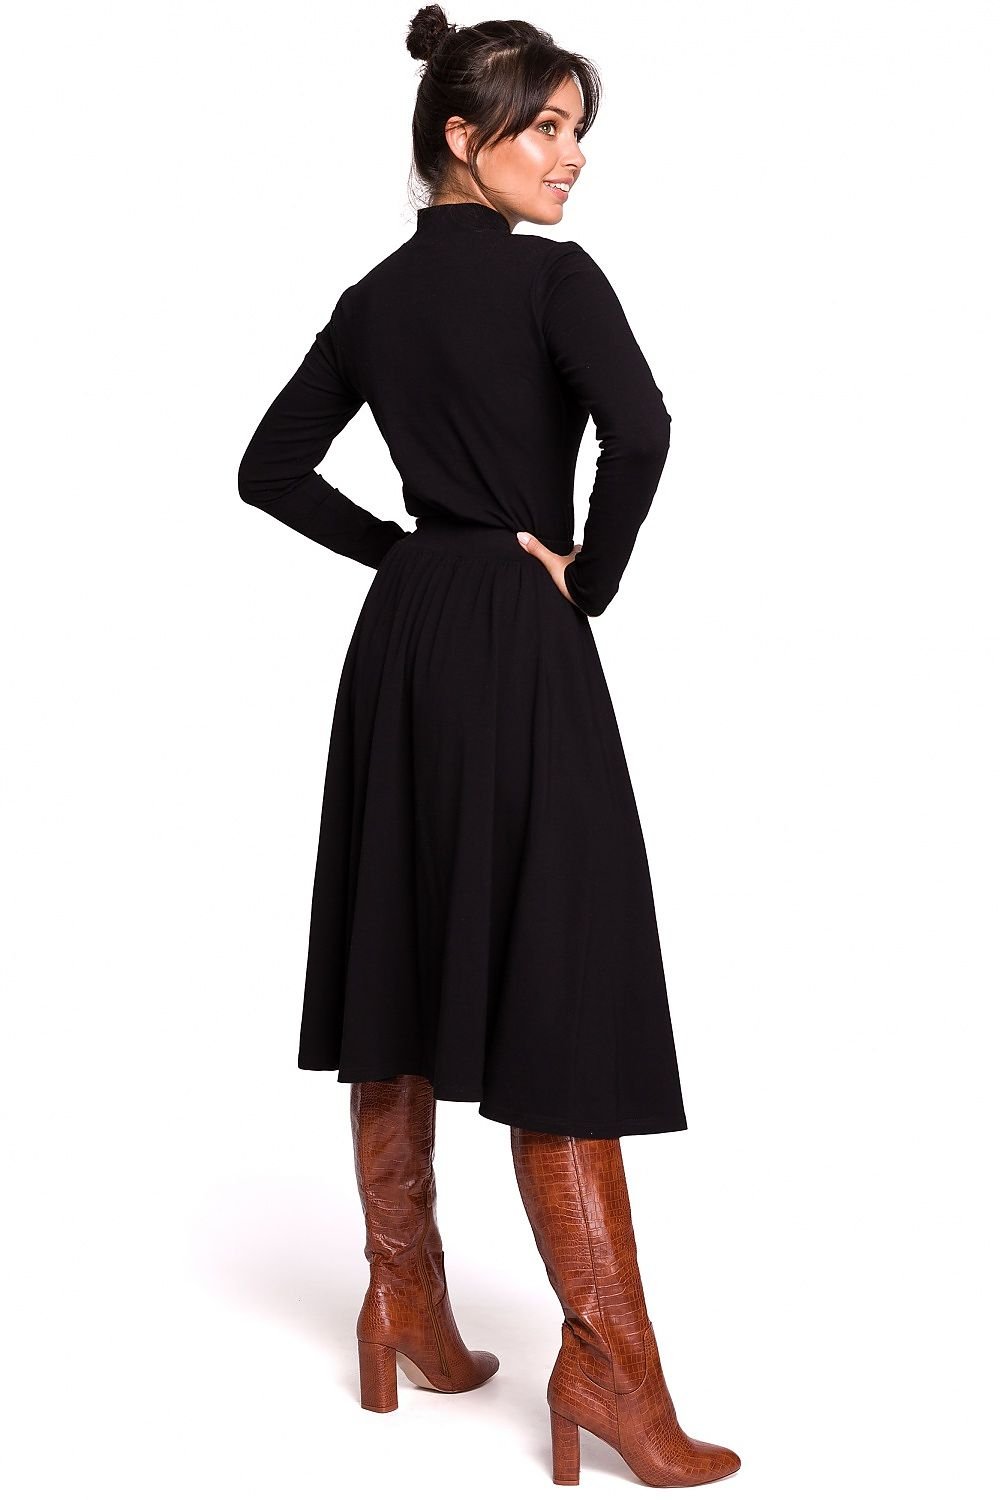 Jupe fendue mi-longue noire élégante, parfaite pour une tenue chic ou professionnelle, tissu fluide et confortable.